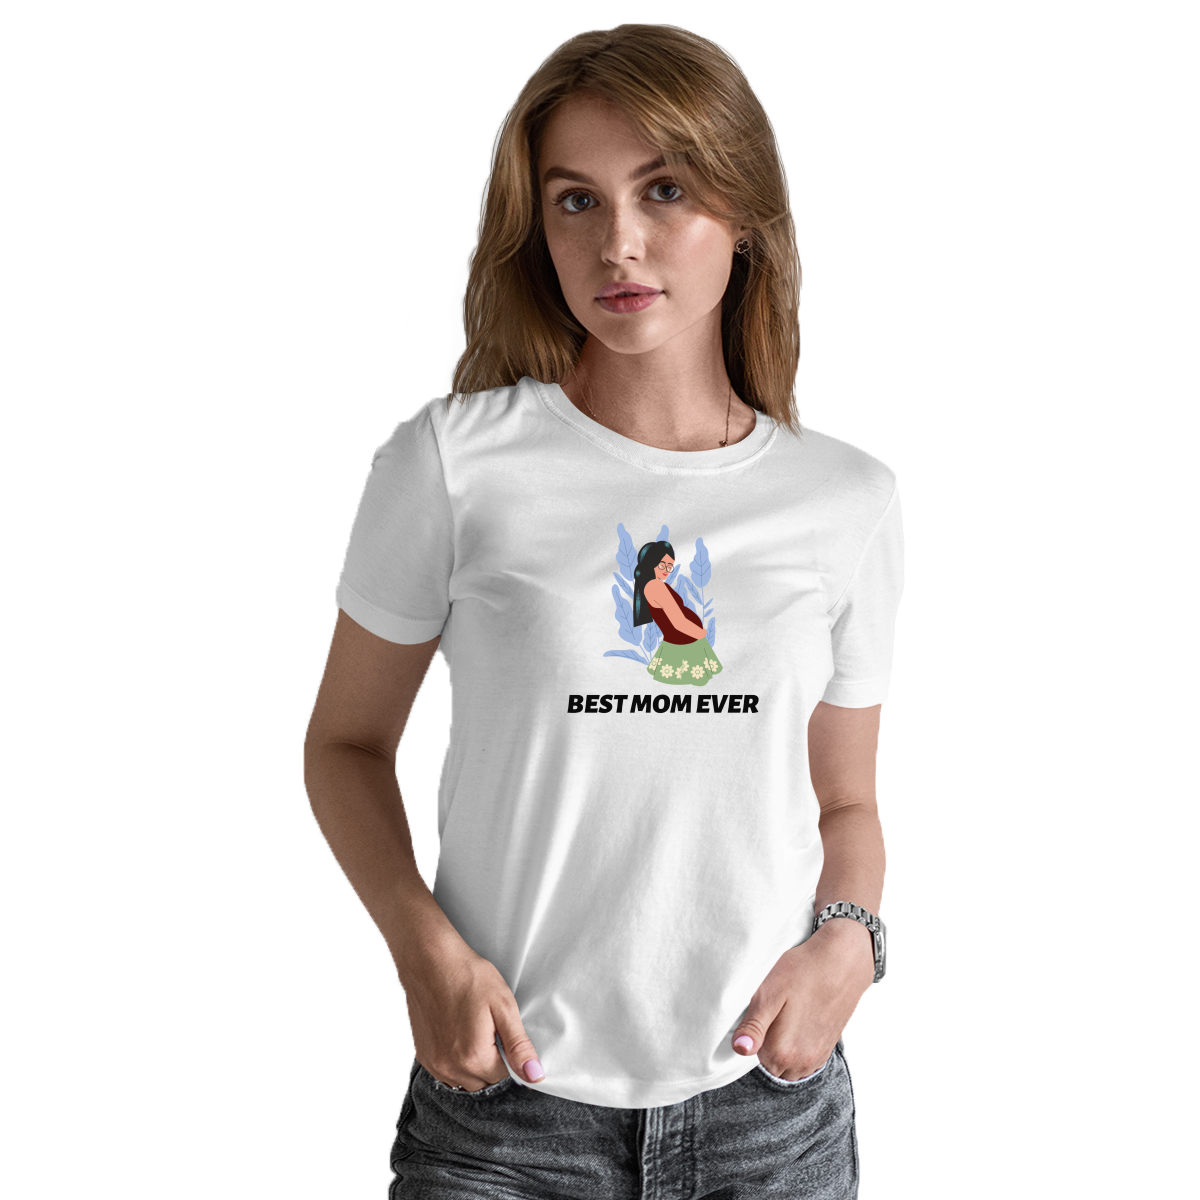 Best Mom Ever Women's T-shirt | White